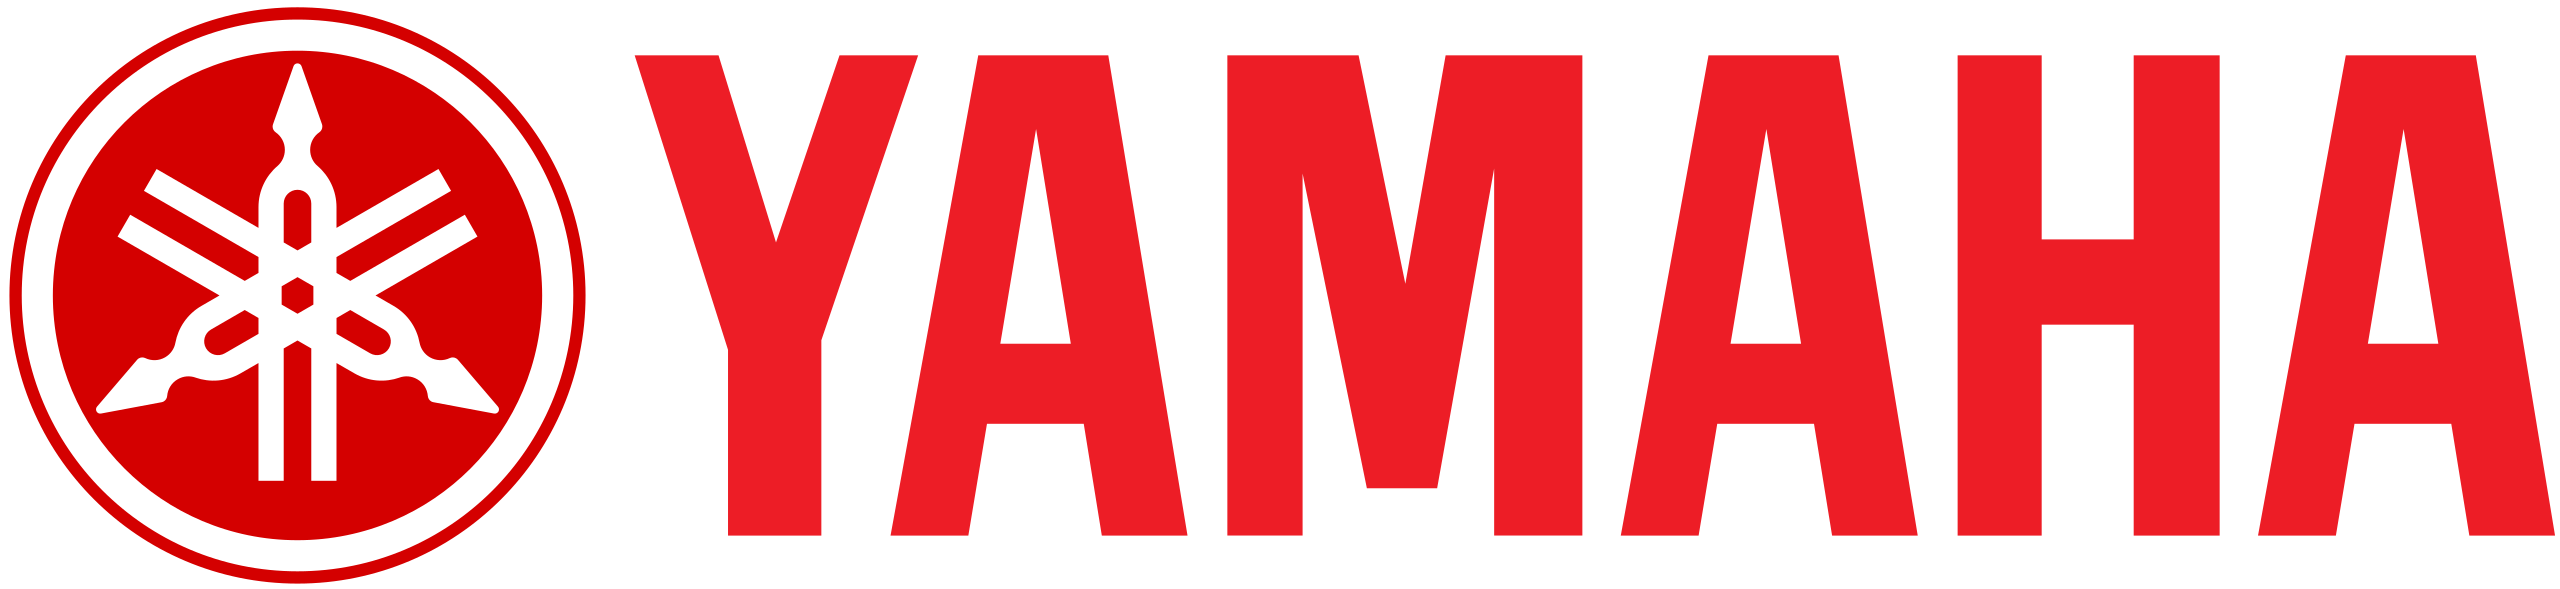 Brand YAMAHA logo